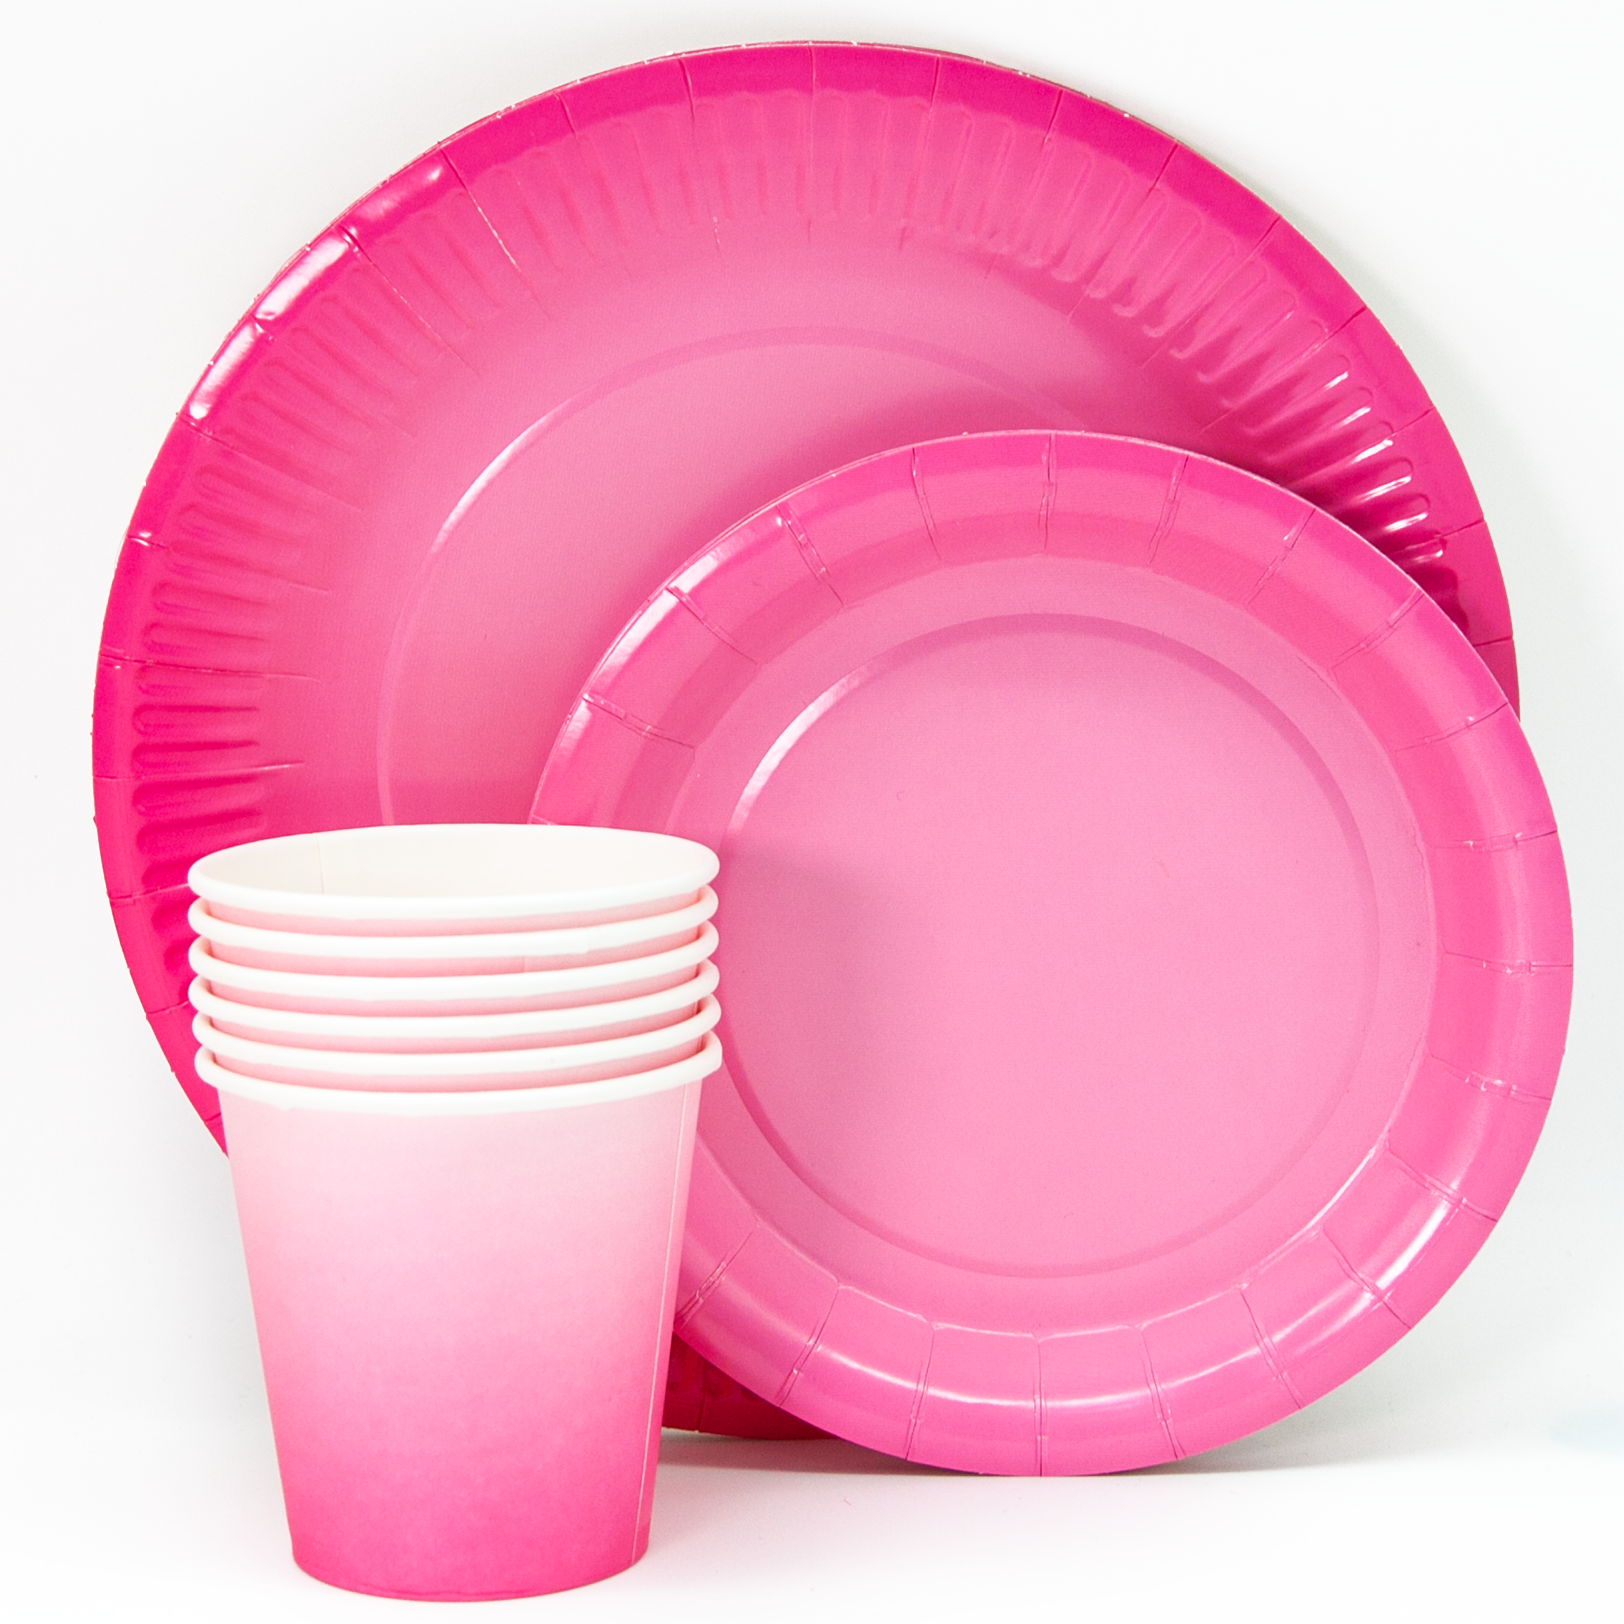 Одноразовая посуда. Тарелки одноразовые розовые. Пластиковая посуда. Пластиковая посуда розовая. Одноразовая посуда недорого